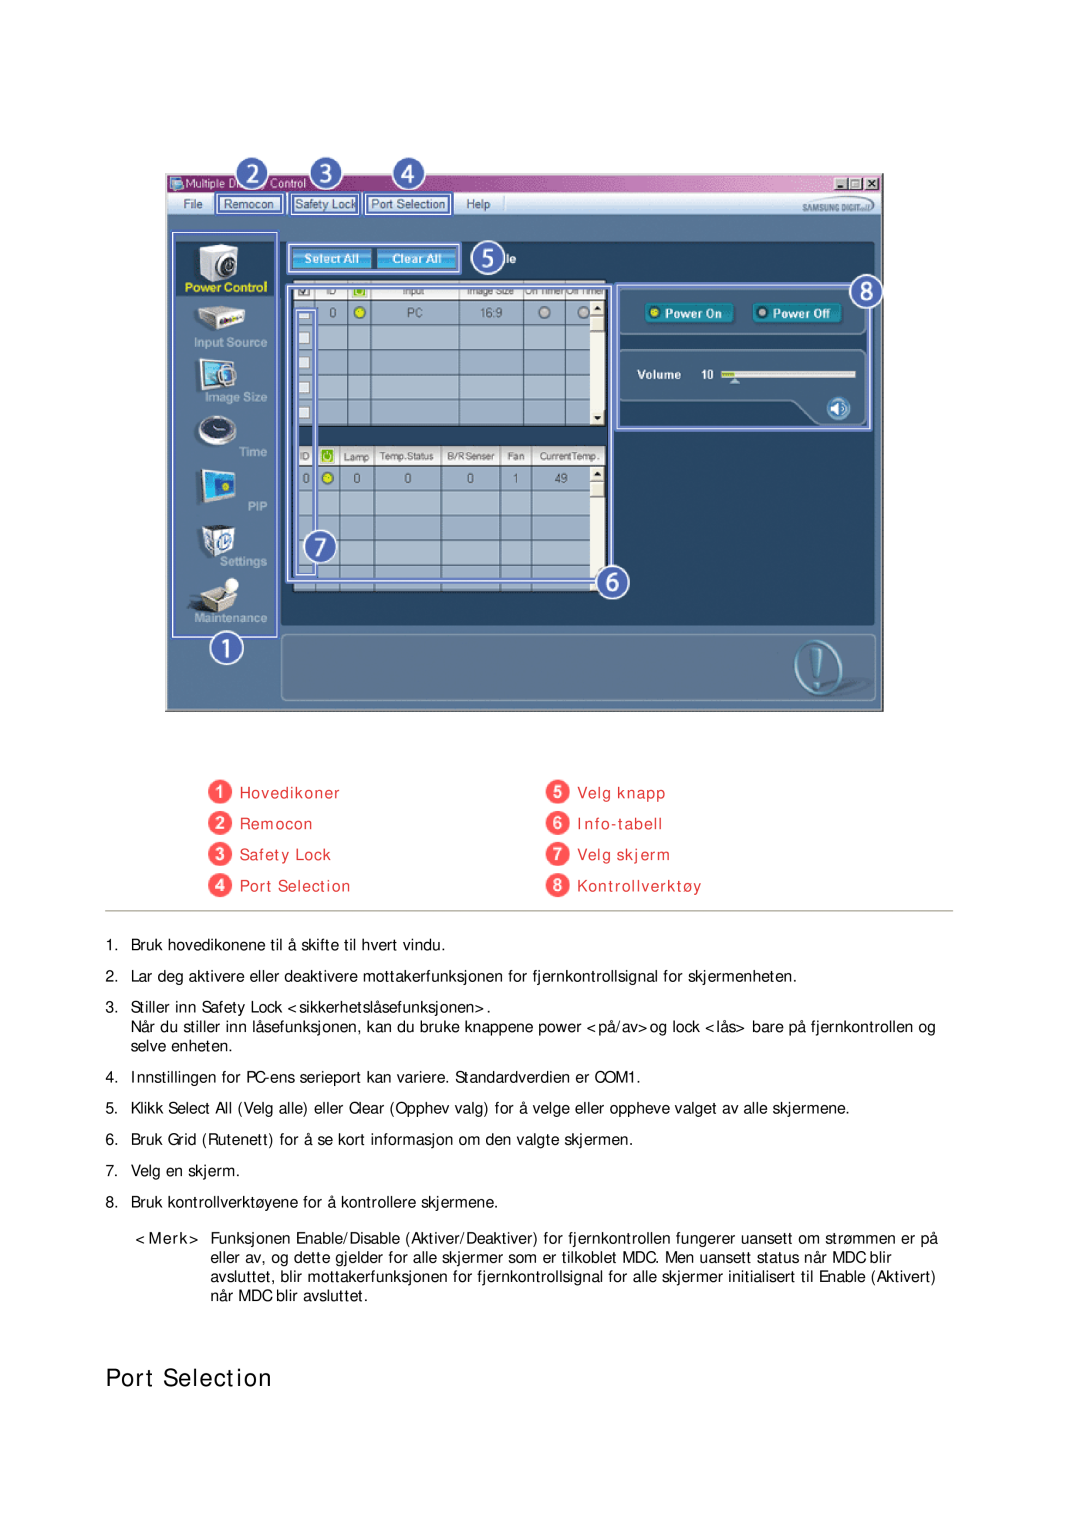 Samsung LH23PTVHBC/EN manual Port Selection, Hovedikoner, Velg knapp, Remocon, Info-tabell, Safety Lock, Velg skjerm 